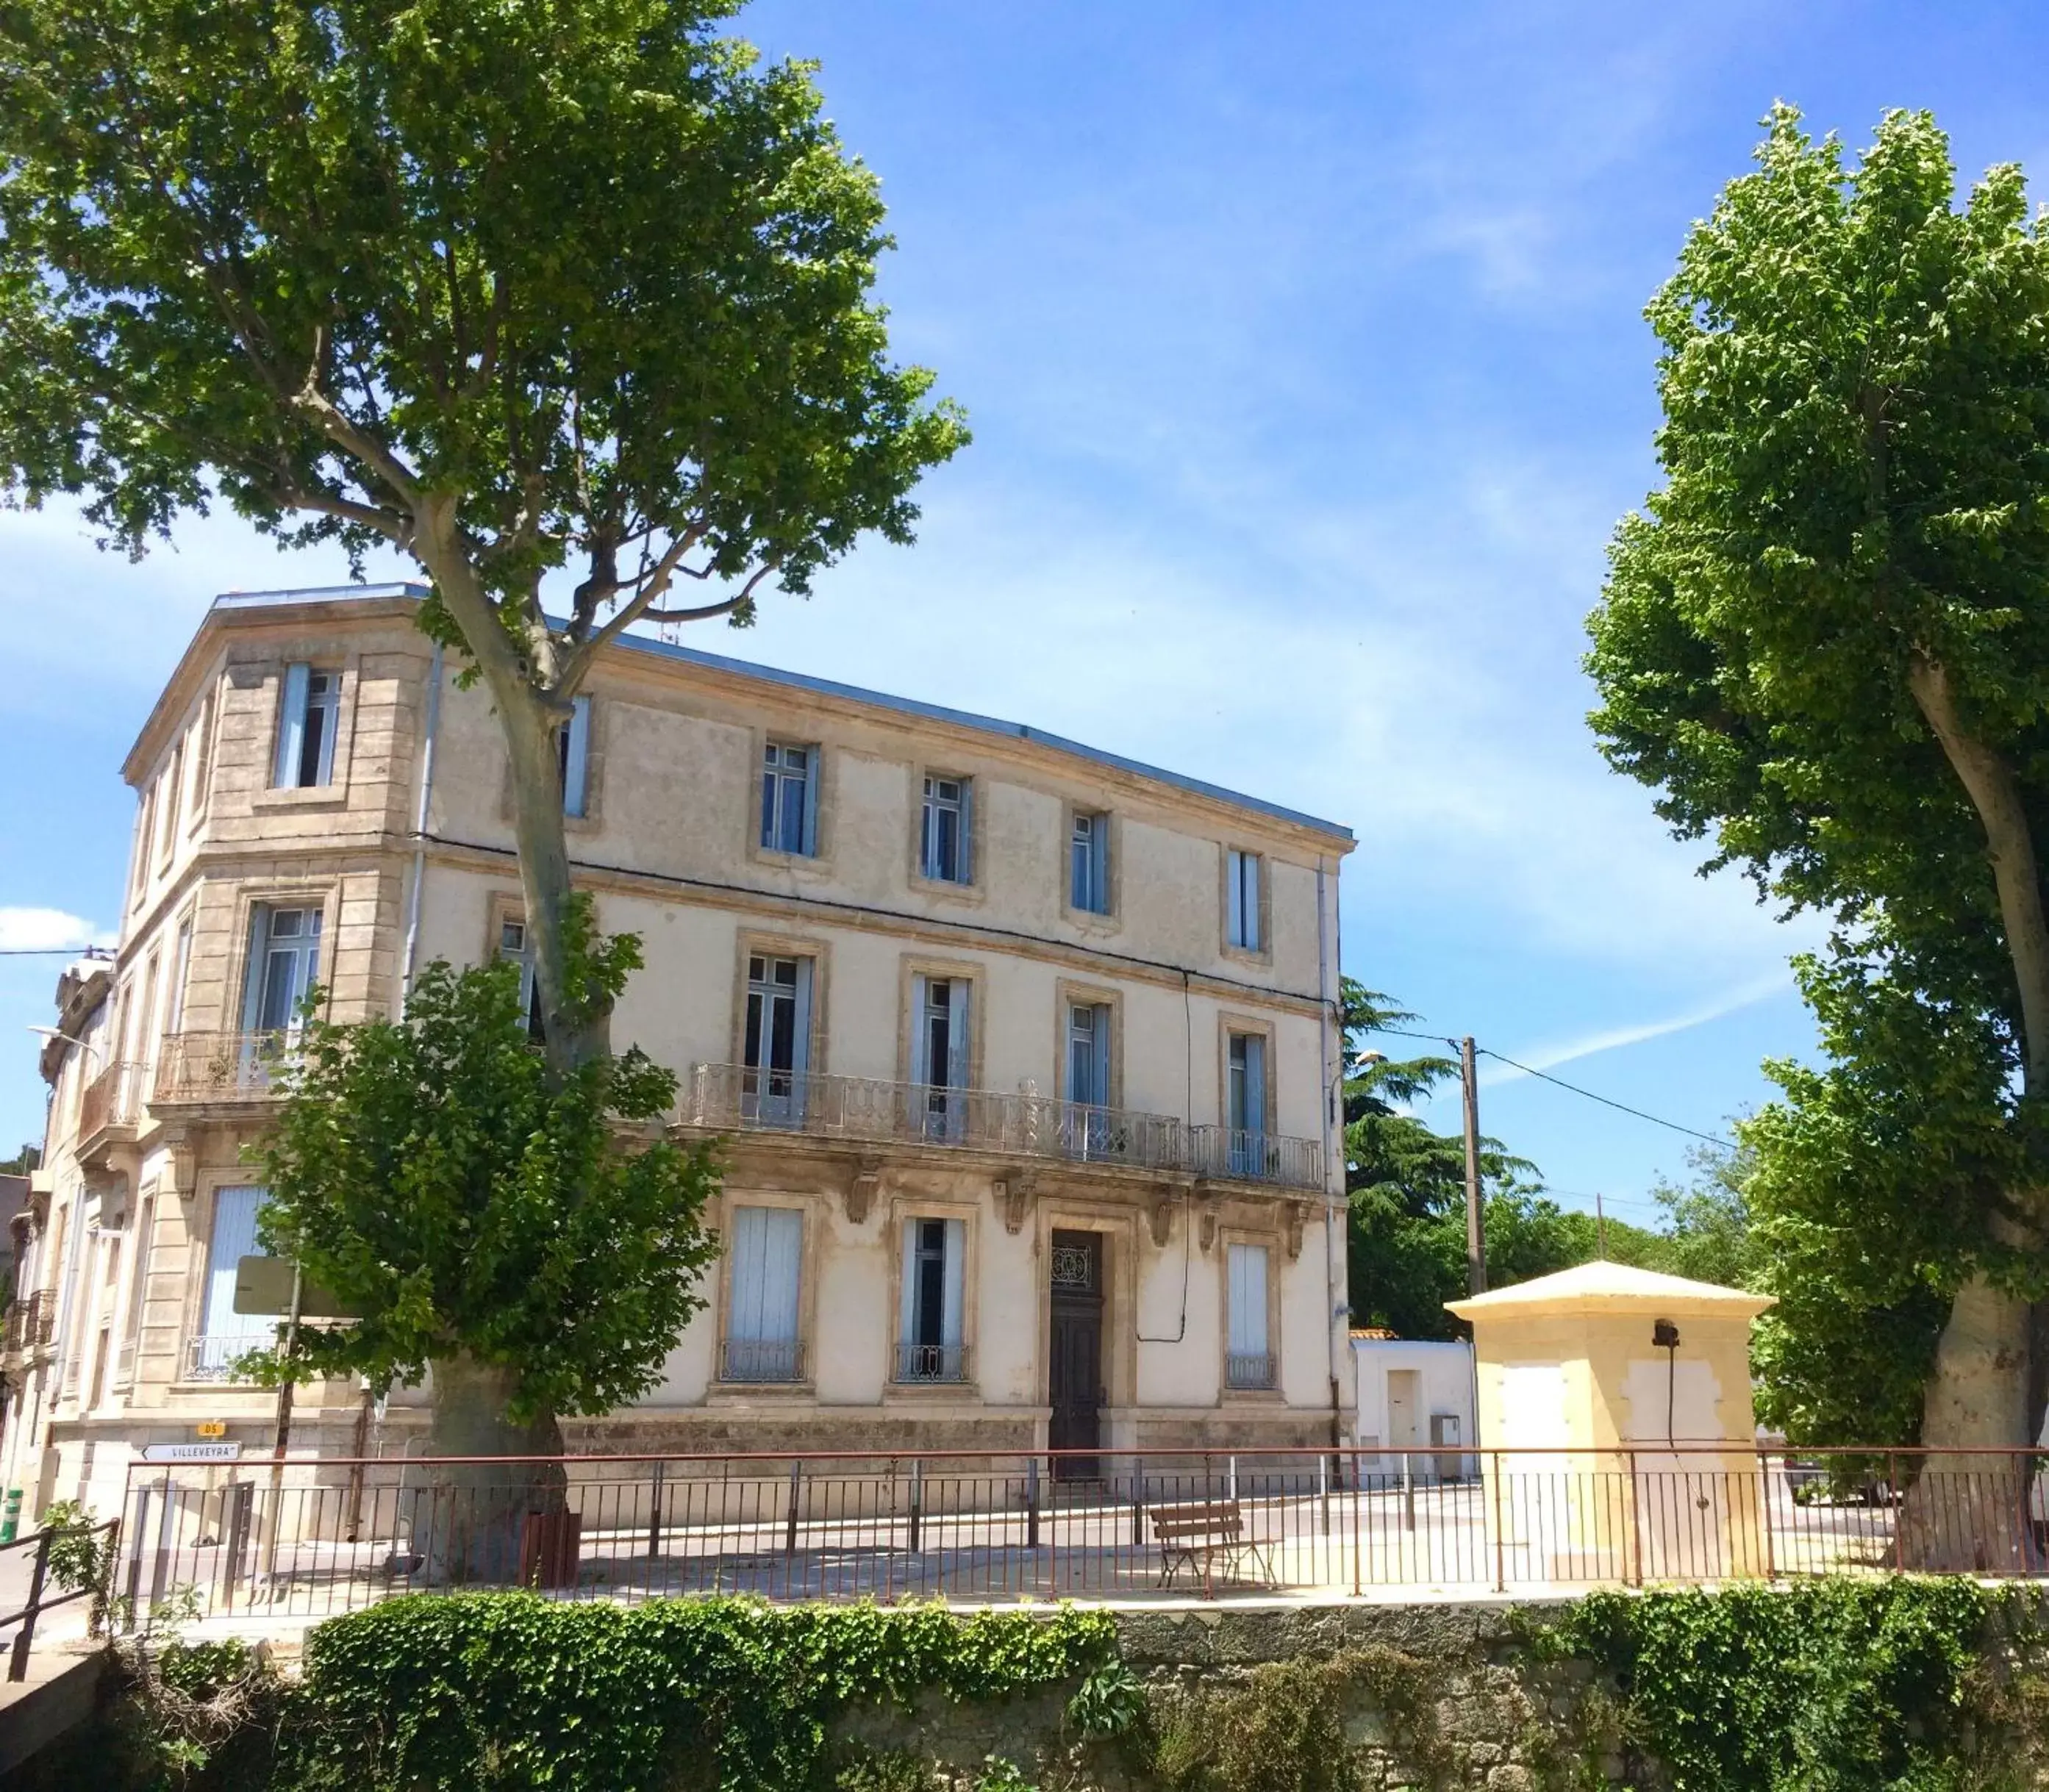 Property Building in La Domitia - Maison d'hôtes, spa, sauna & massages